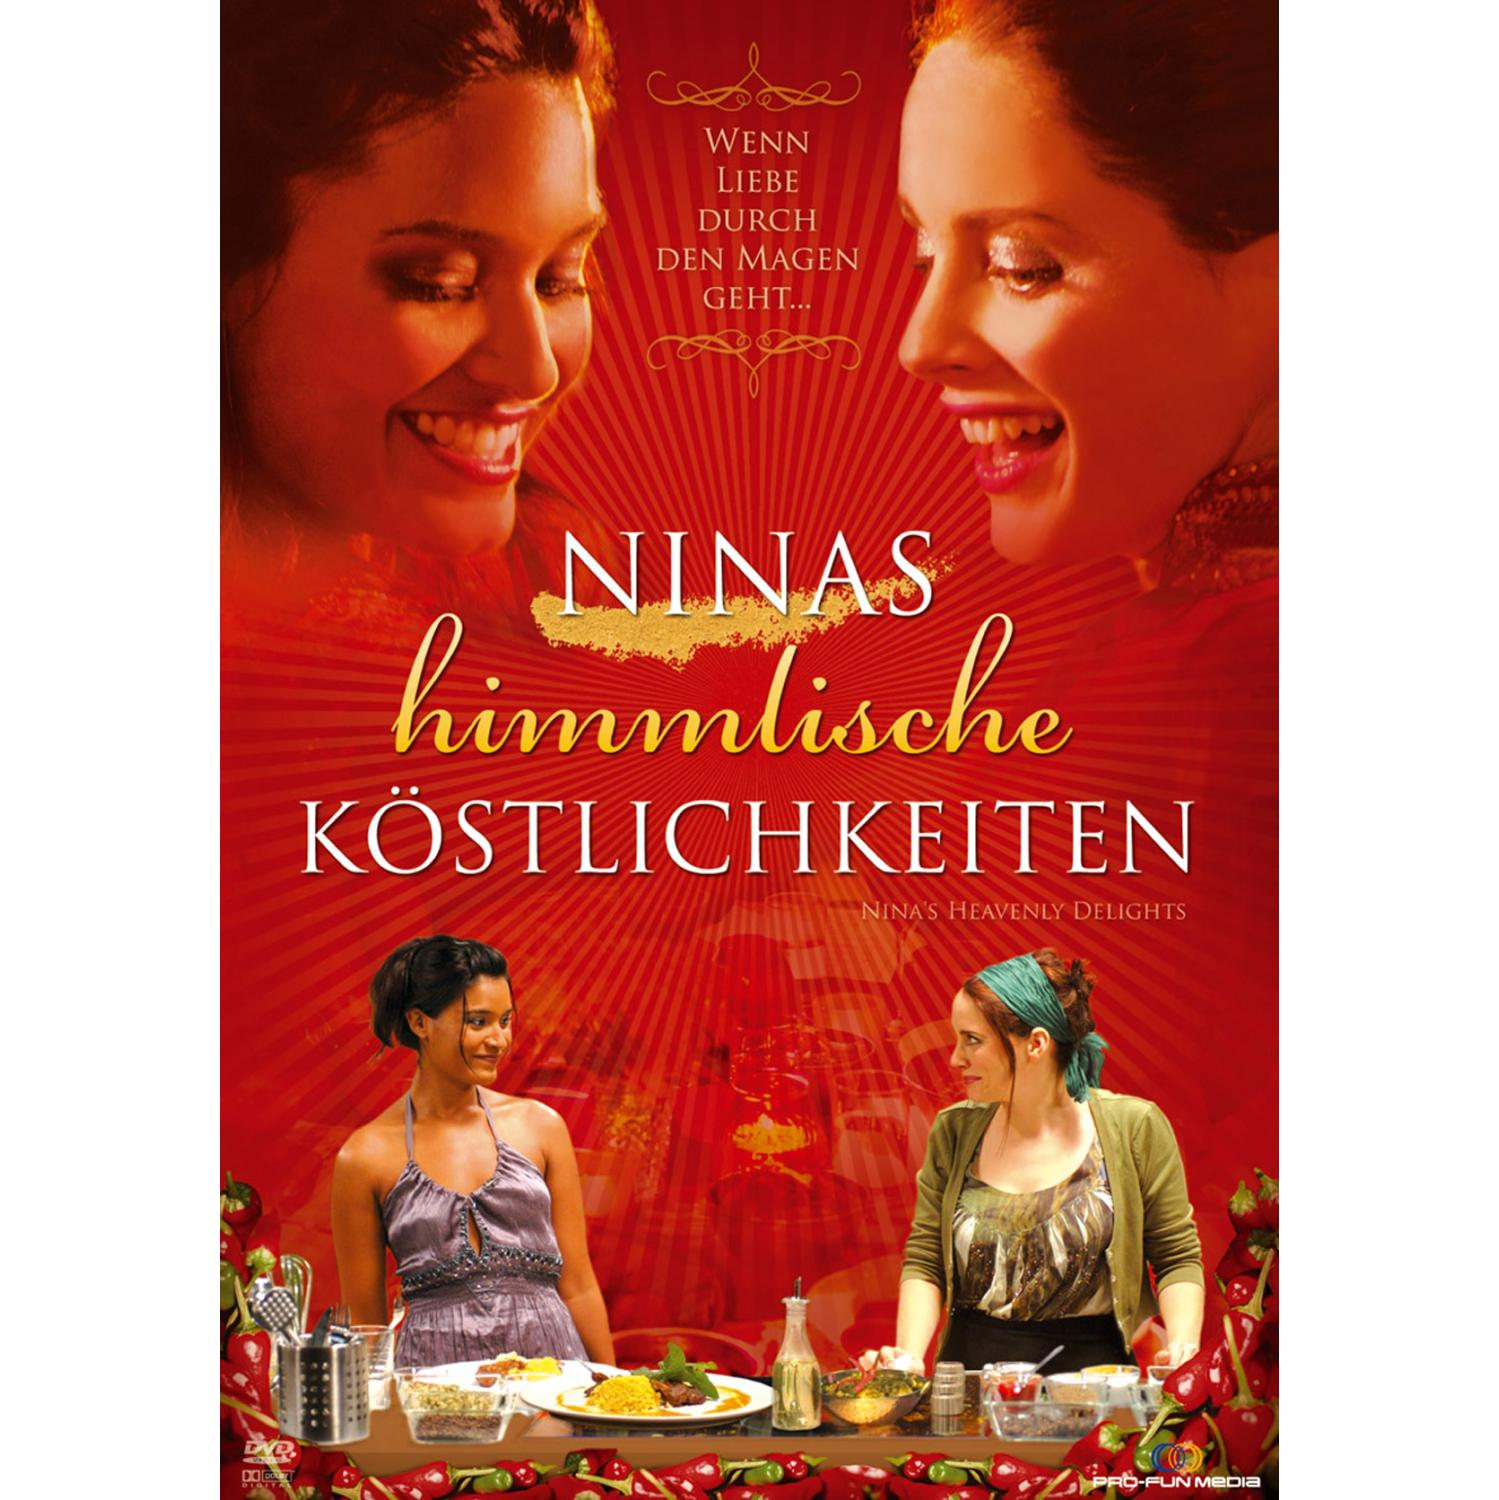 Ninas DVD Köstlichkeiten himmlische